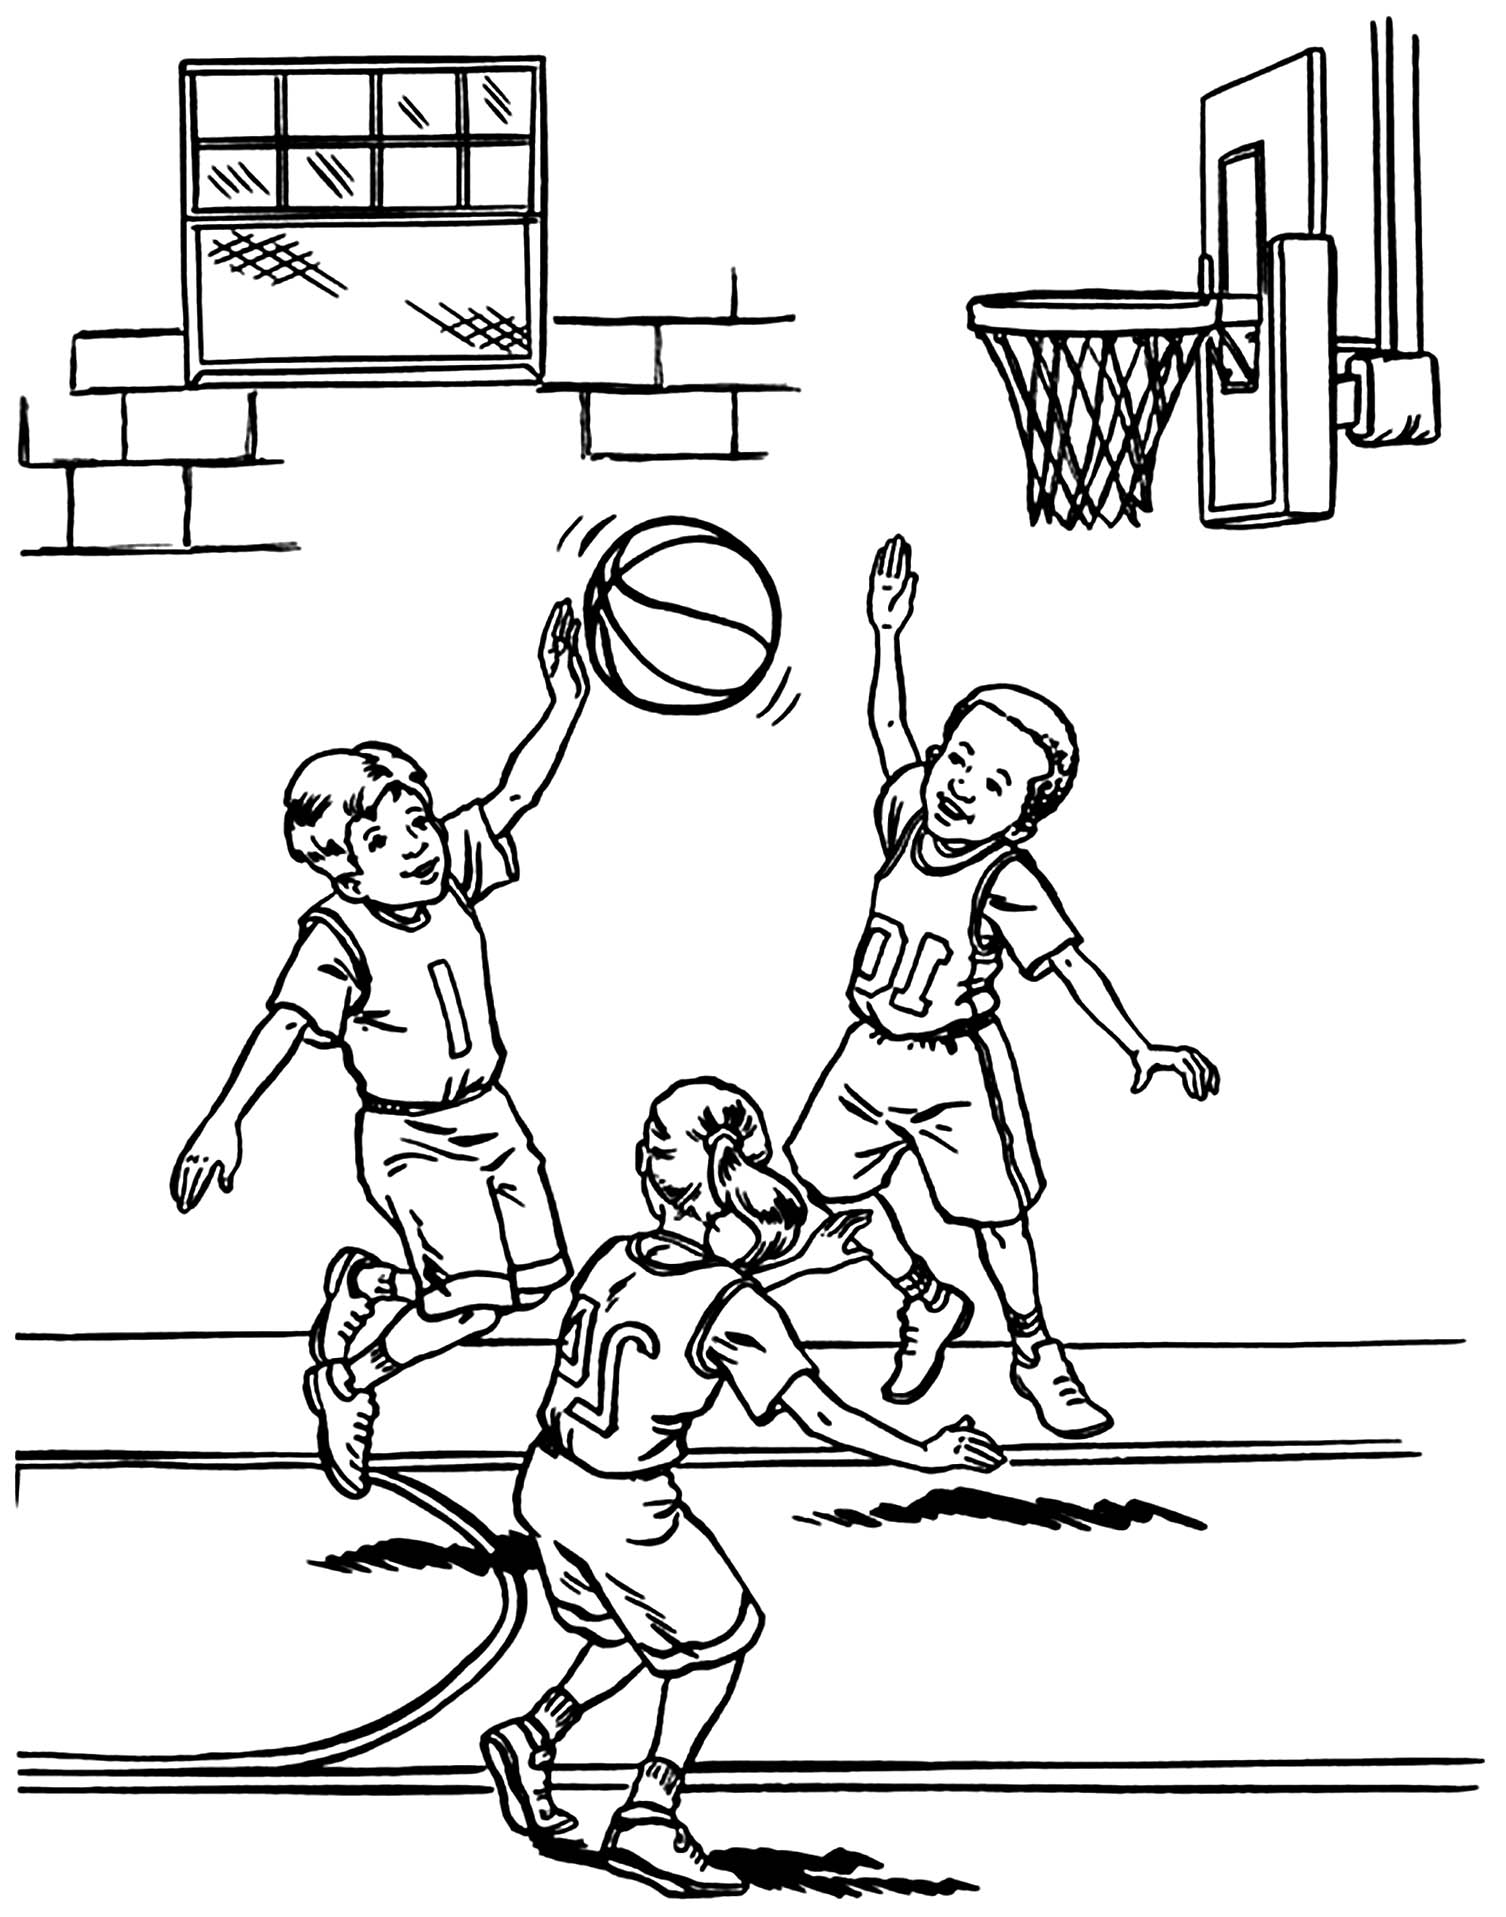 Dibujos para colorear de Baloncesto para imprimir - Baloncesto (Basketball)  - Just Color Niños : Dibujos para colorear para niños